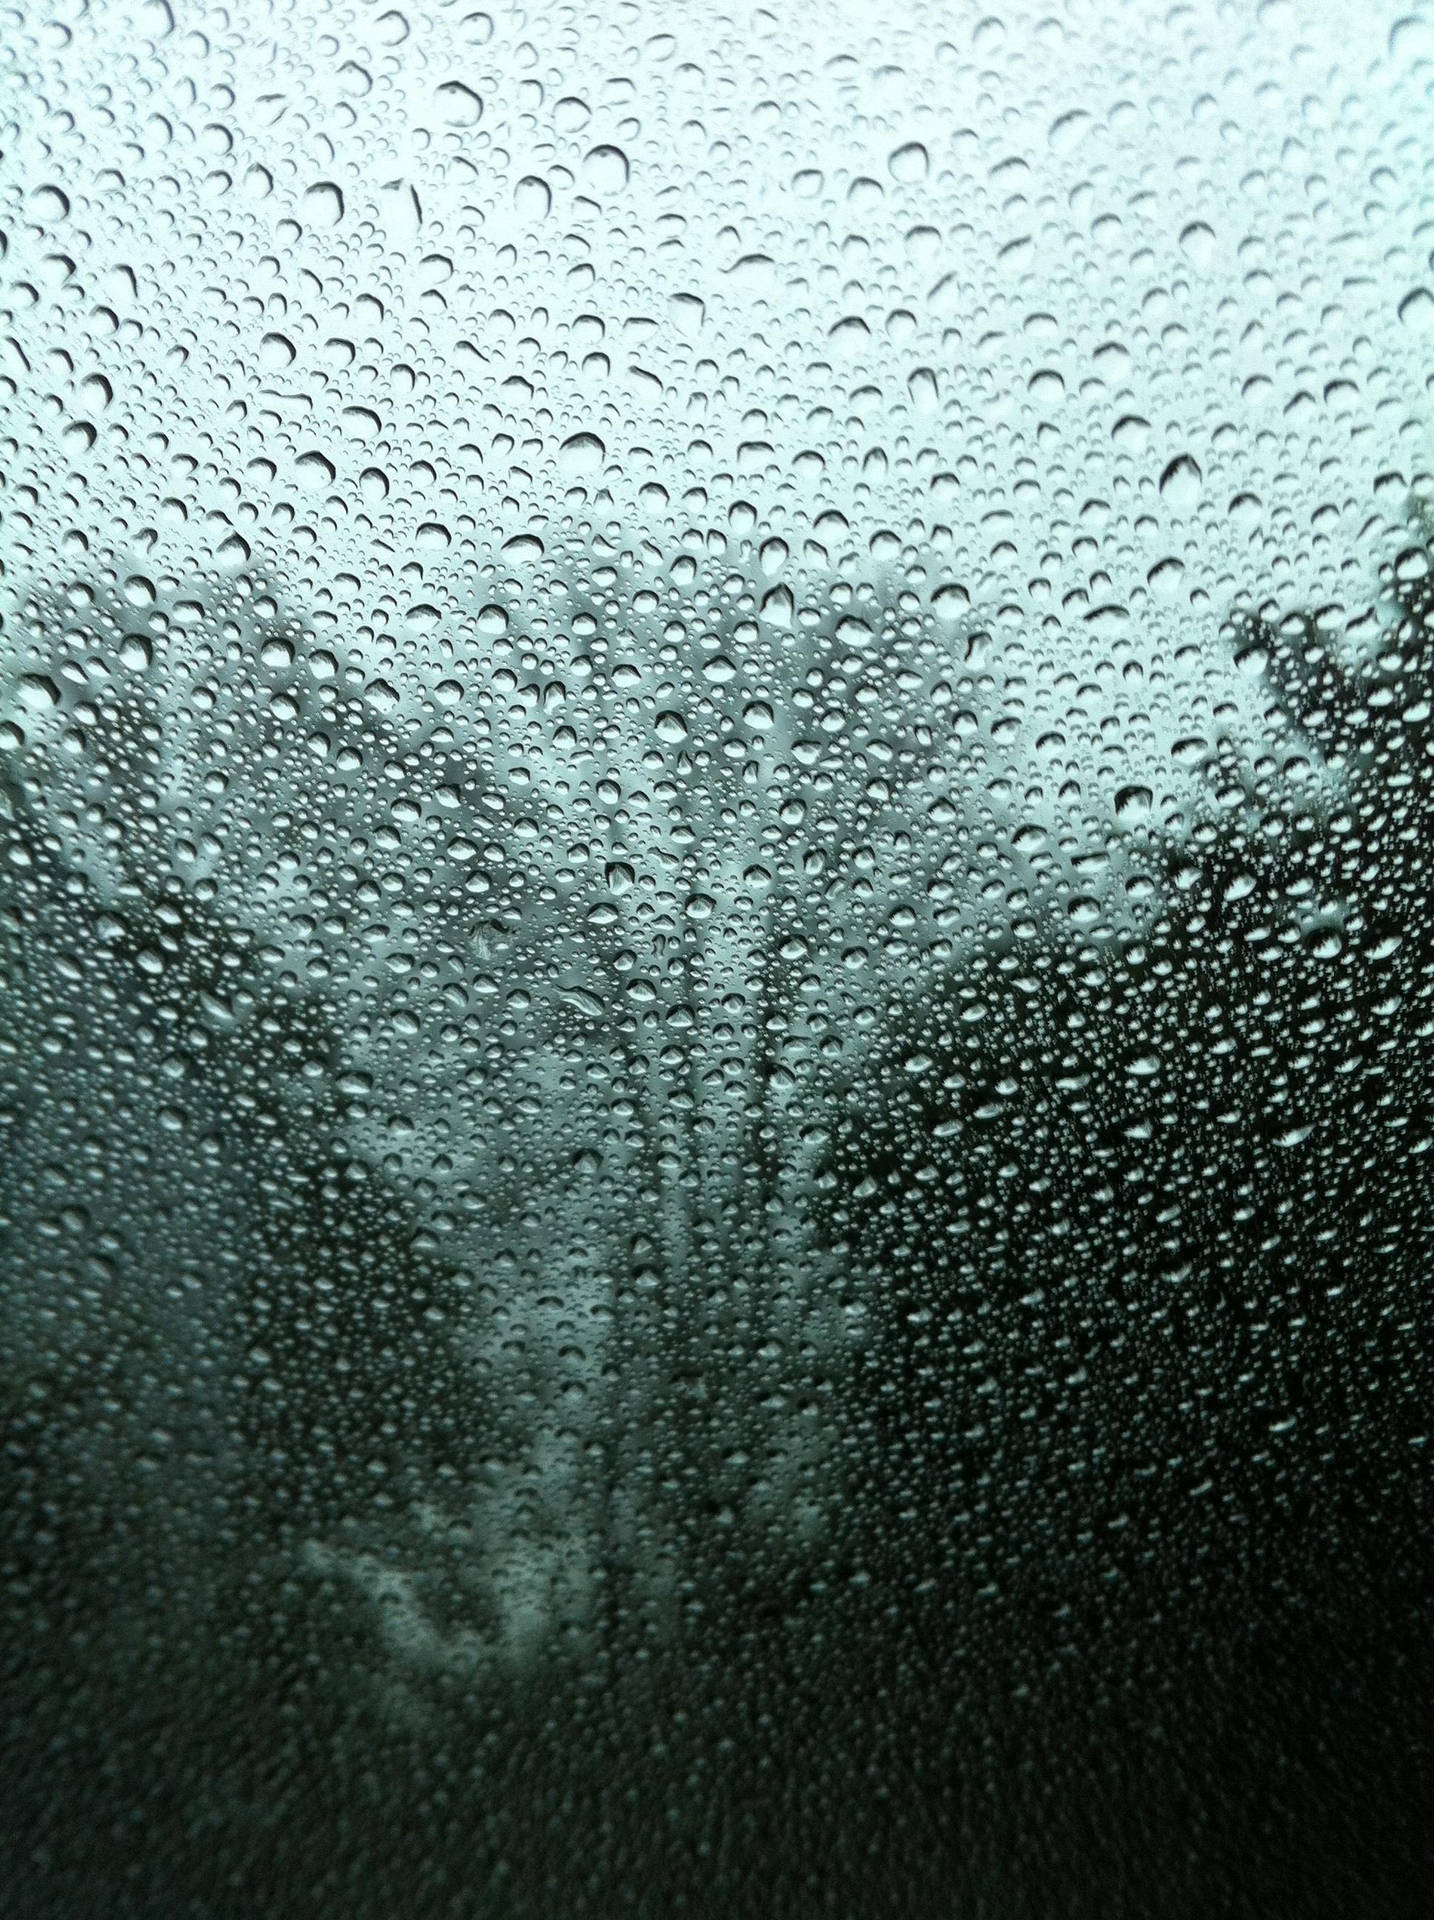 Mistet regndråber på klar glasoverflade Wallpaper